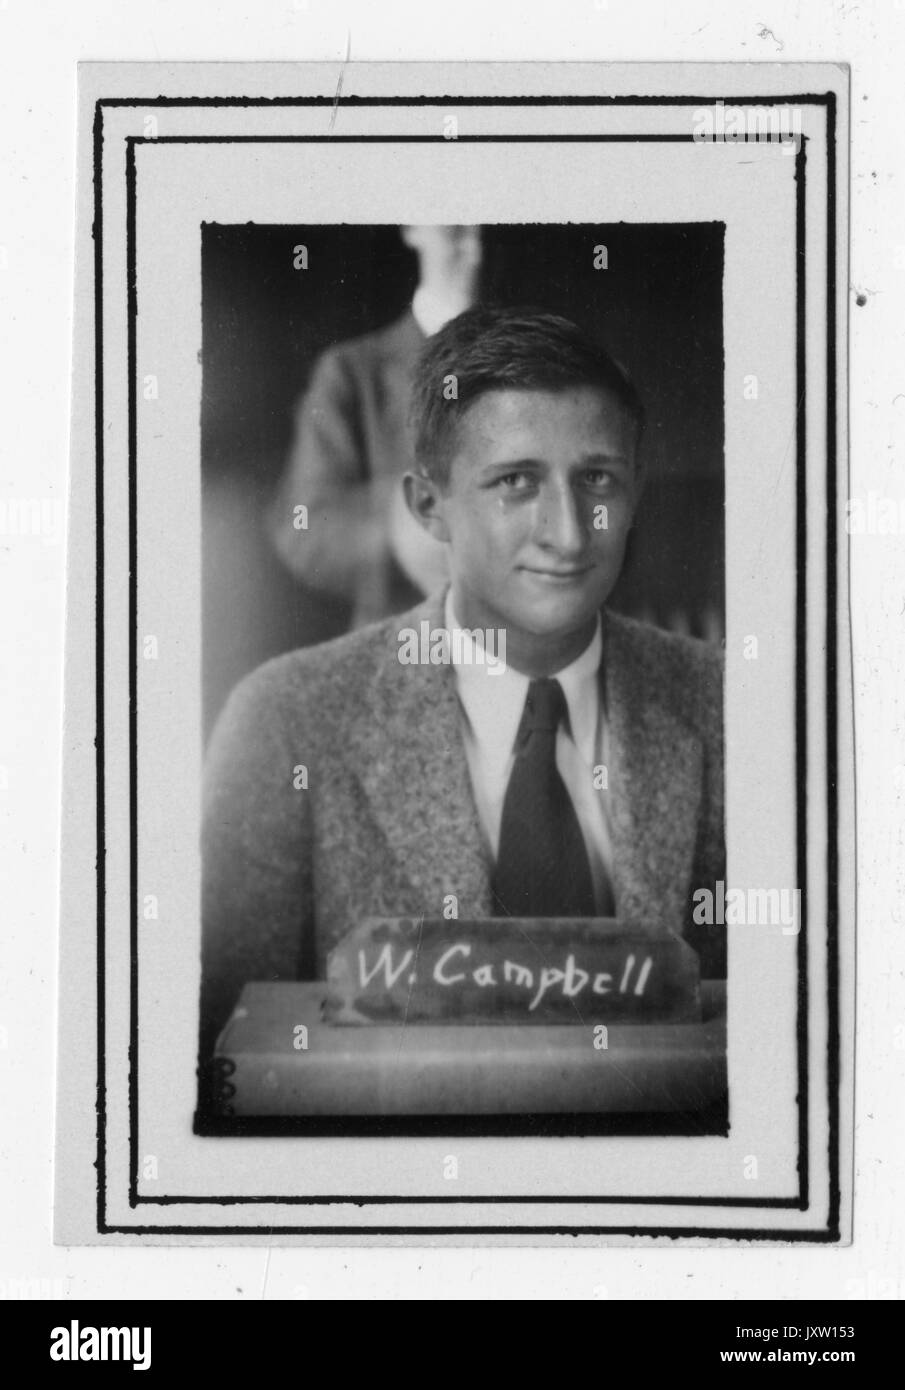 William Herbert Campbell, portrait Fotografie, Brustkorb, Gesicht, c 20 Jahre alter, 1930. Stockfoto